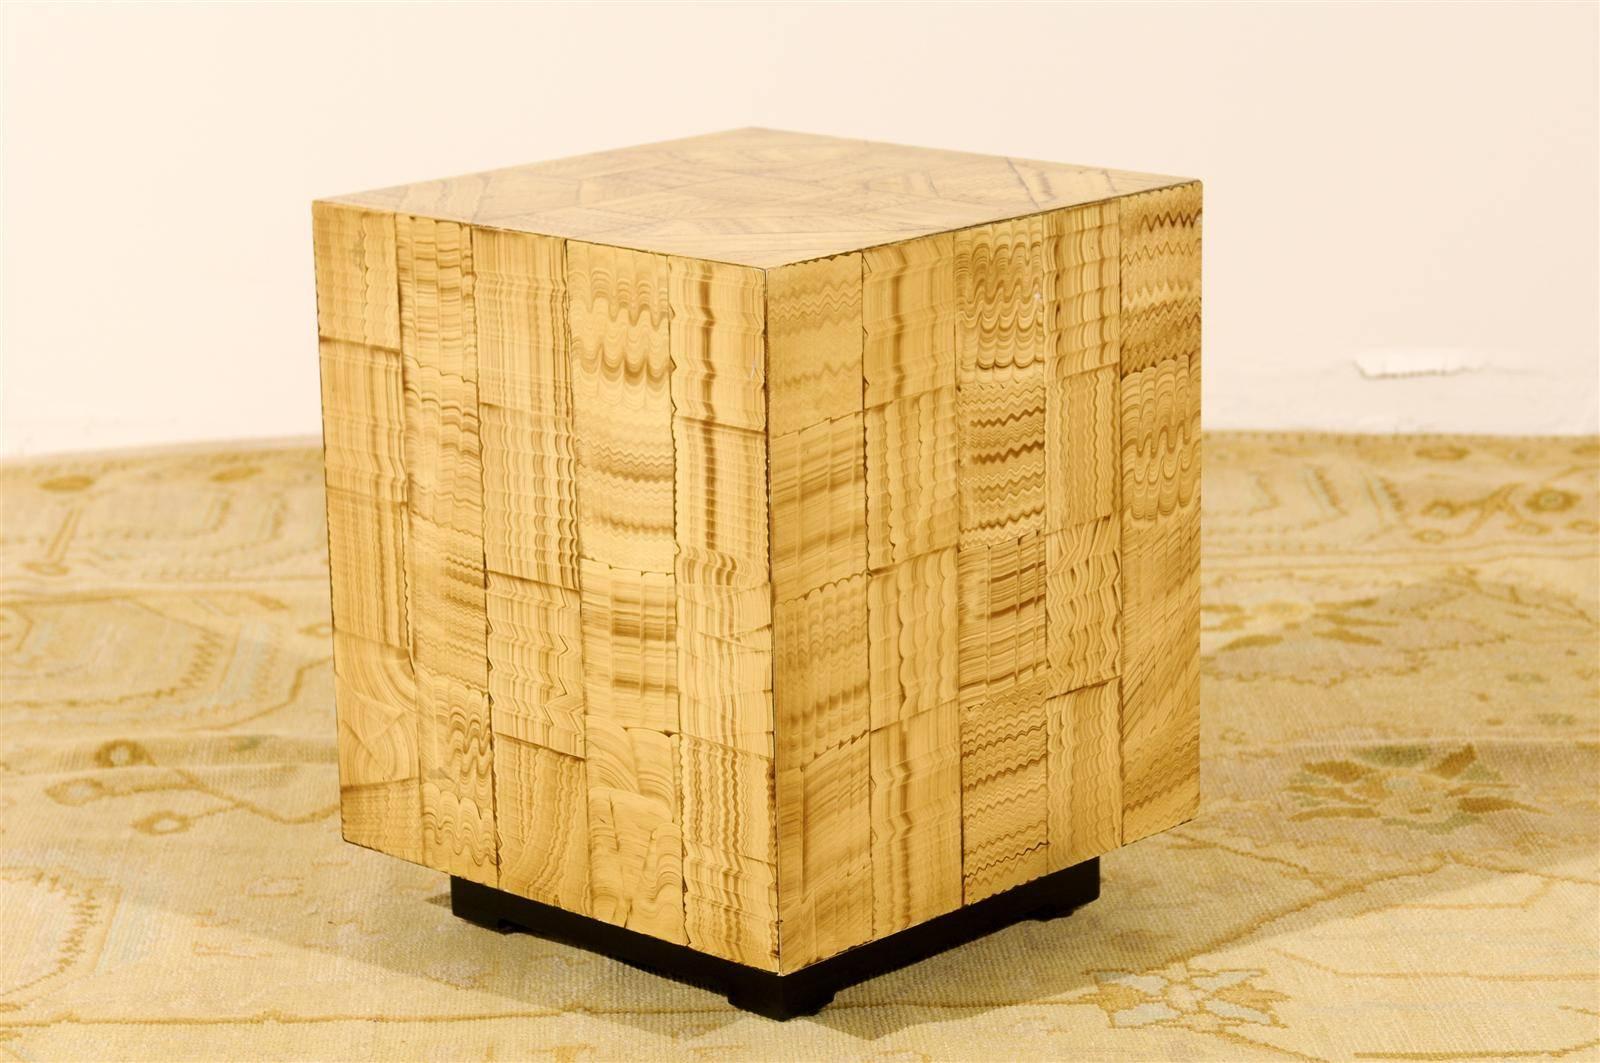 Ces magnifiques tables cubiques sont expédiées telles que photographiées et décrites dans l'annonce : Excellent état restauré et prêt à être installé.

Une fabuleuse paire de cubes laqués à la main sur un socle en laque noire. Construction en bois